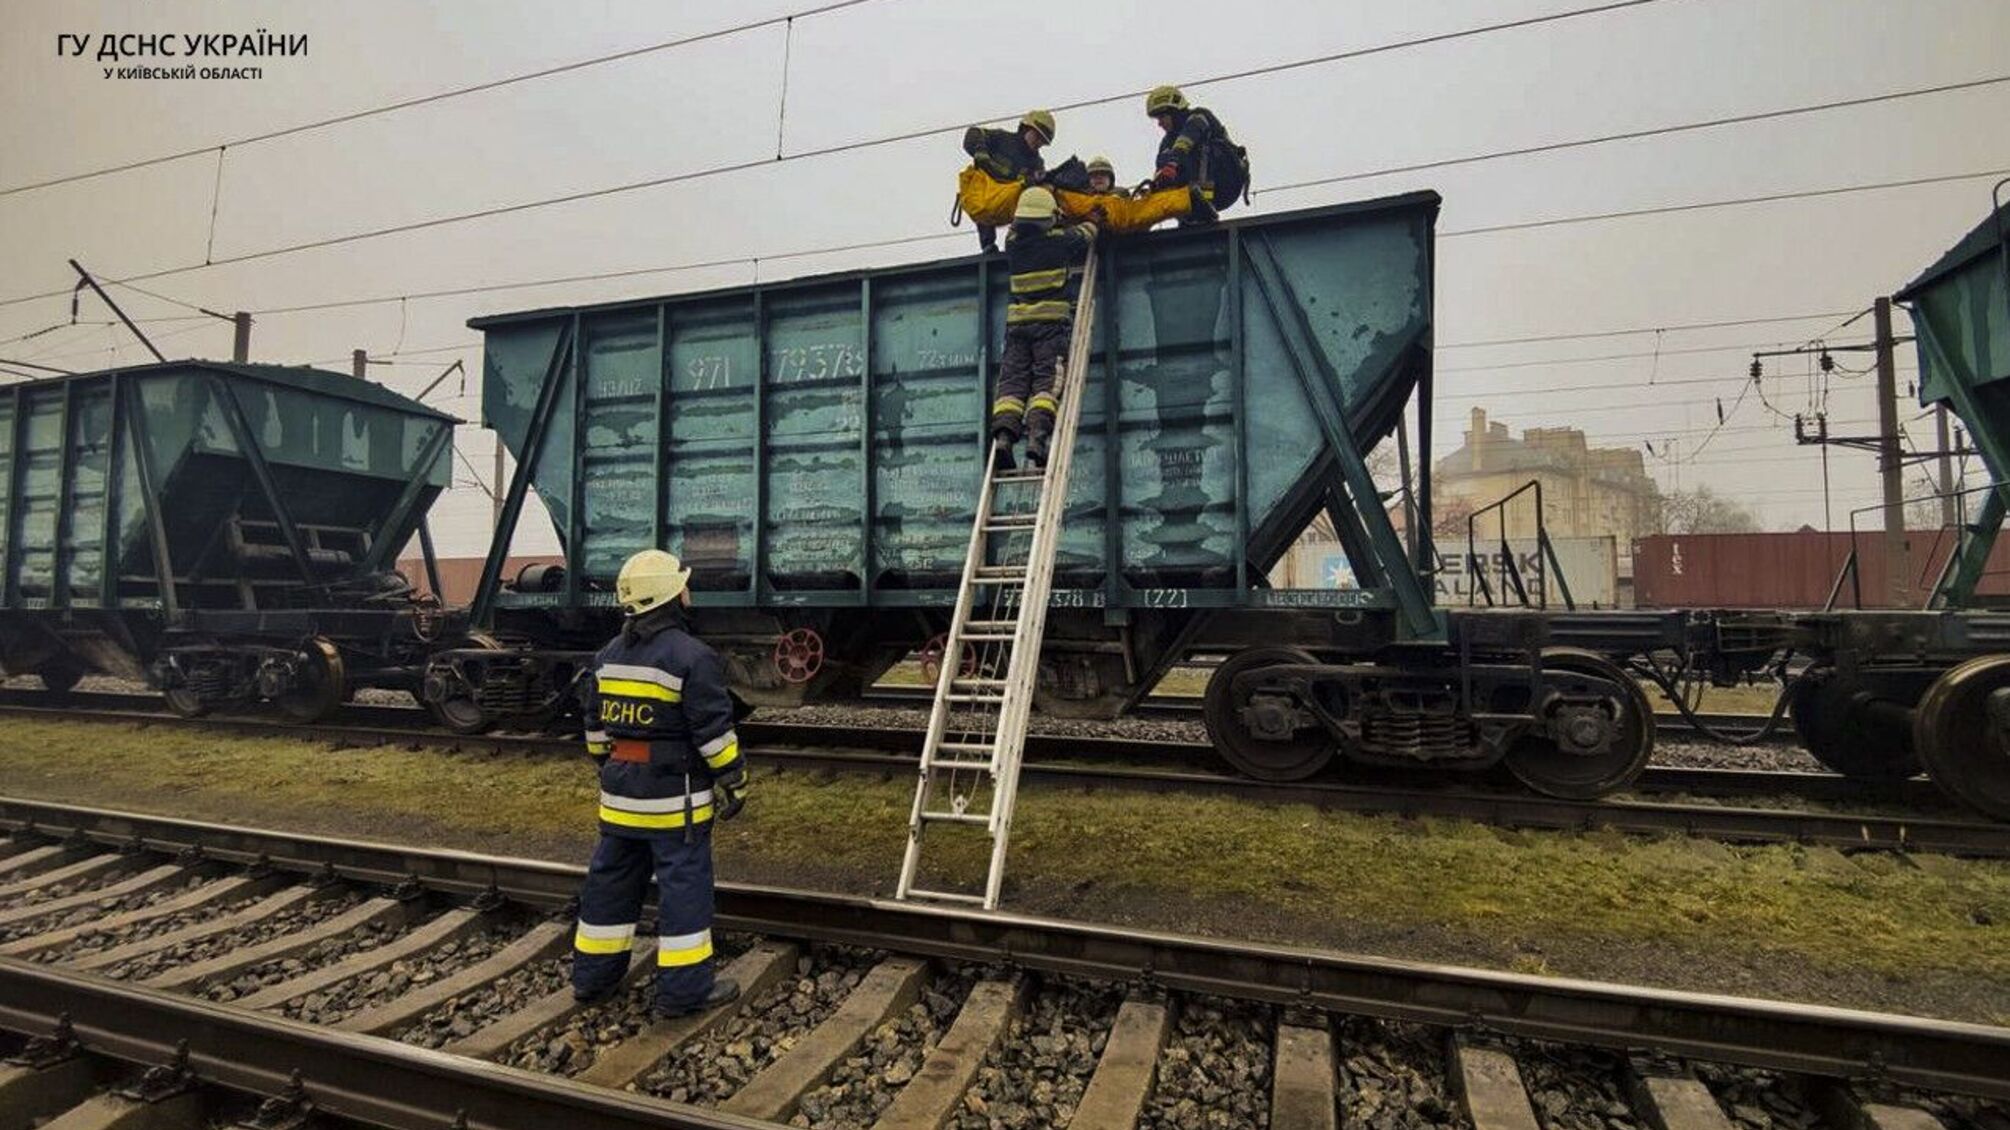 Смертельное фото на крыше поезда: в Киевской области из-за опасных развлечений погиб подросток